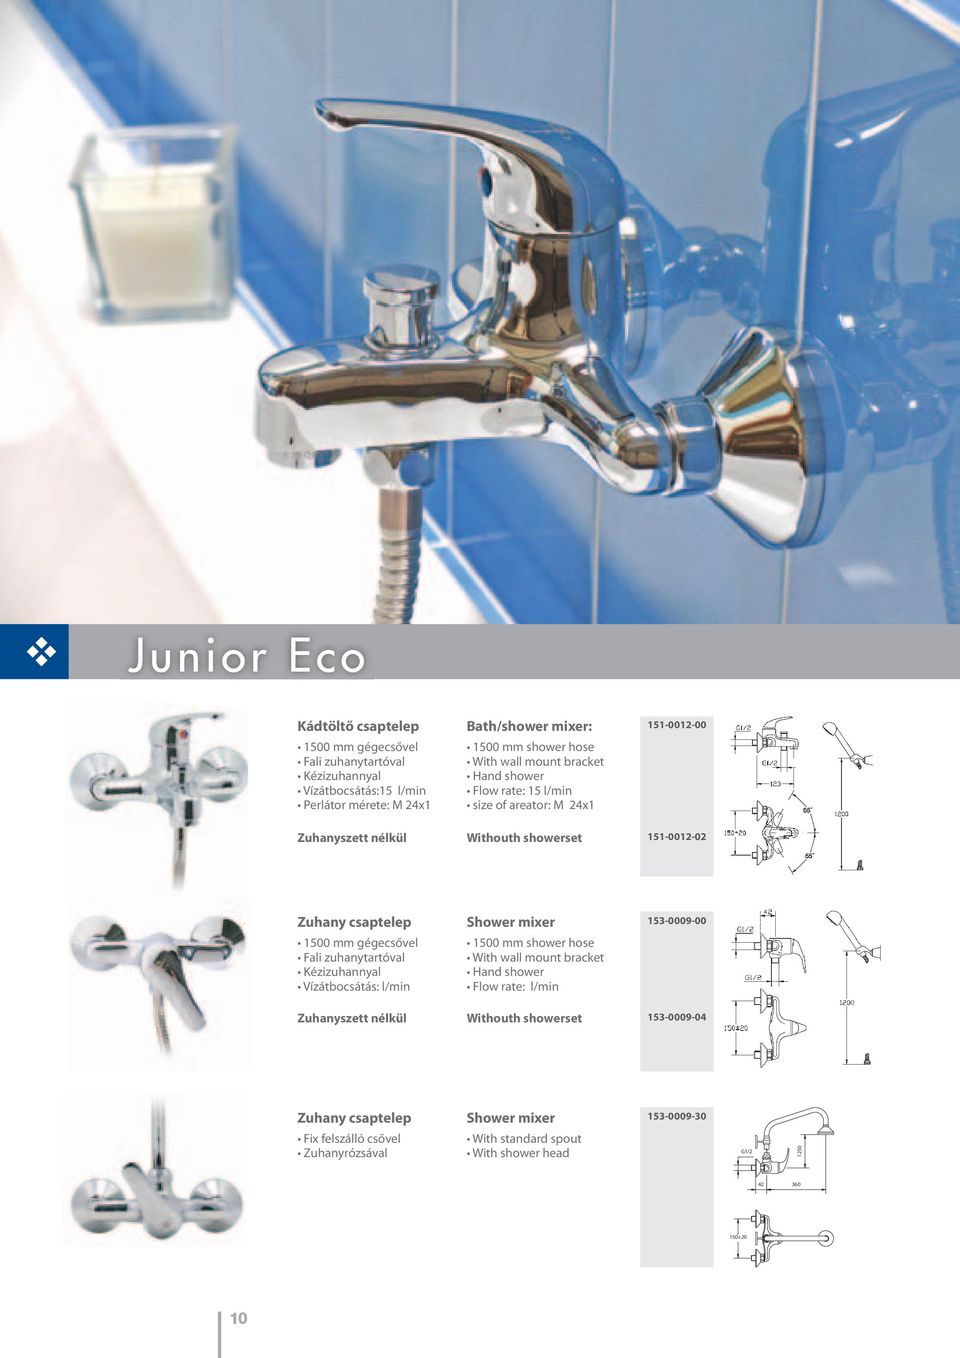 gégecsővel Fali zuhanytartóval Kézizuhannyal Vízátbocsátás: l/min Shower mixer 1500 mm shower hose With wall mount bracket Hand shower Flow rate: l/min 153-0009-00